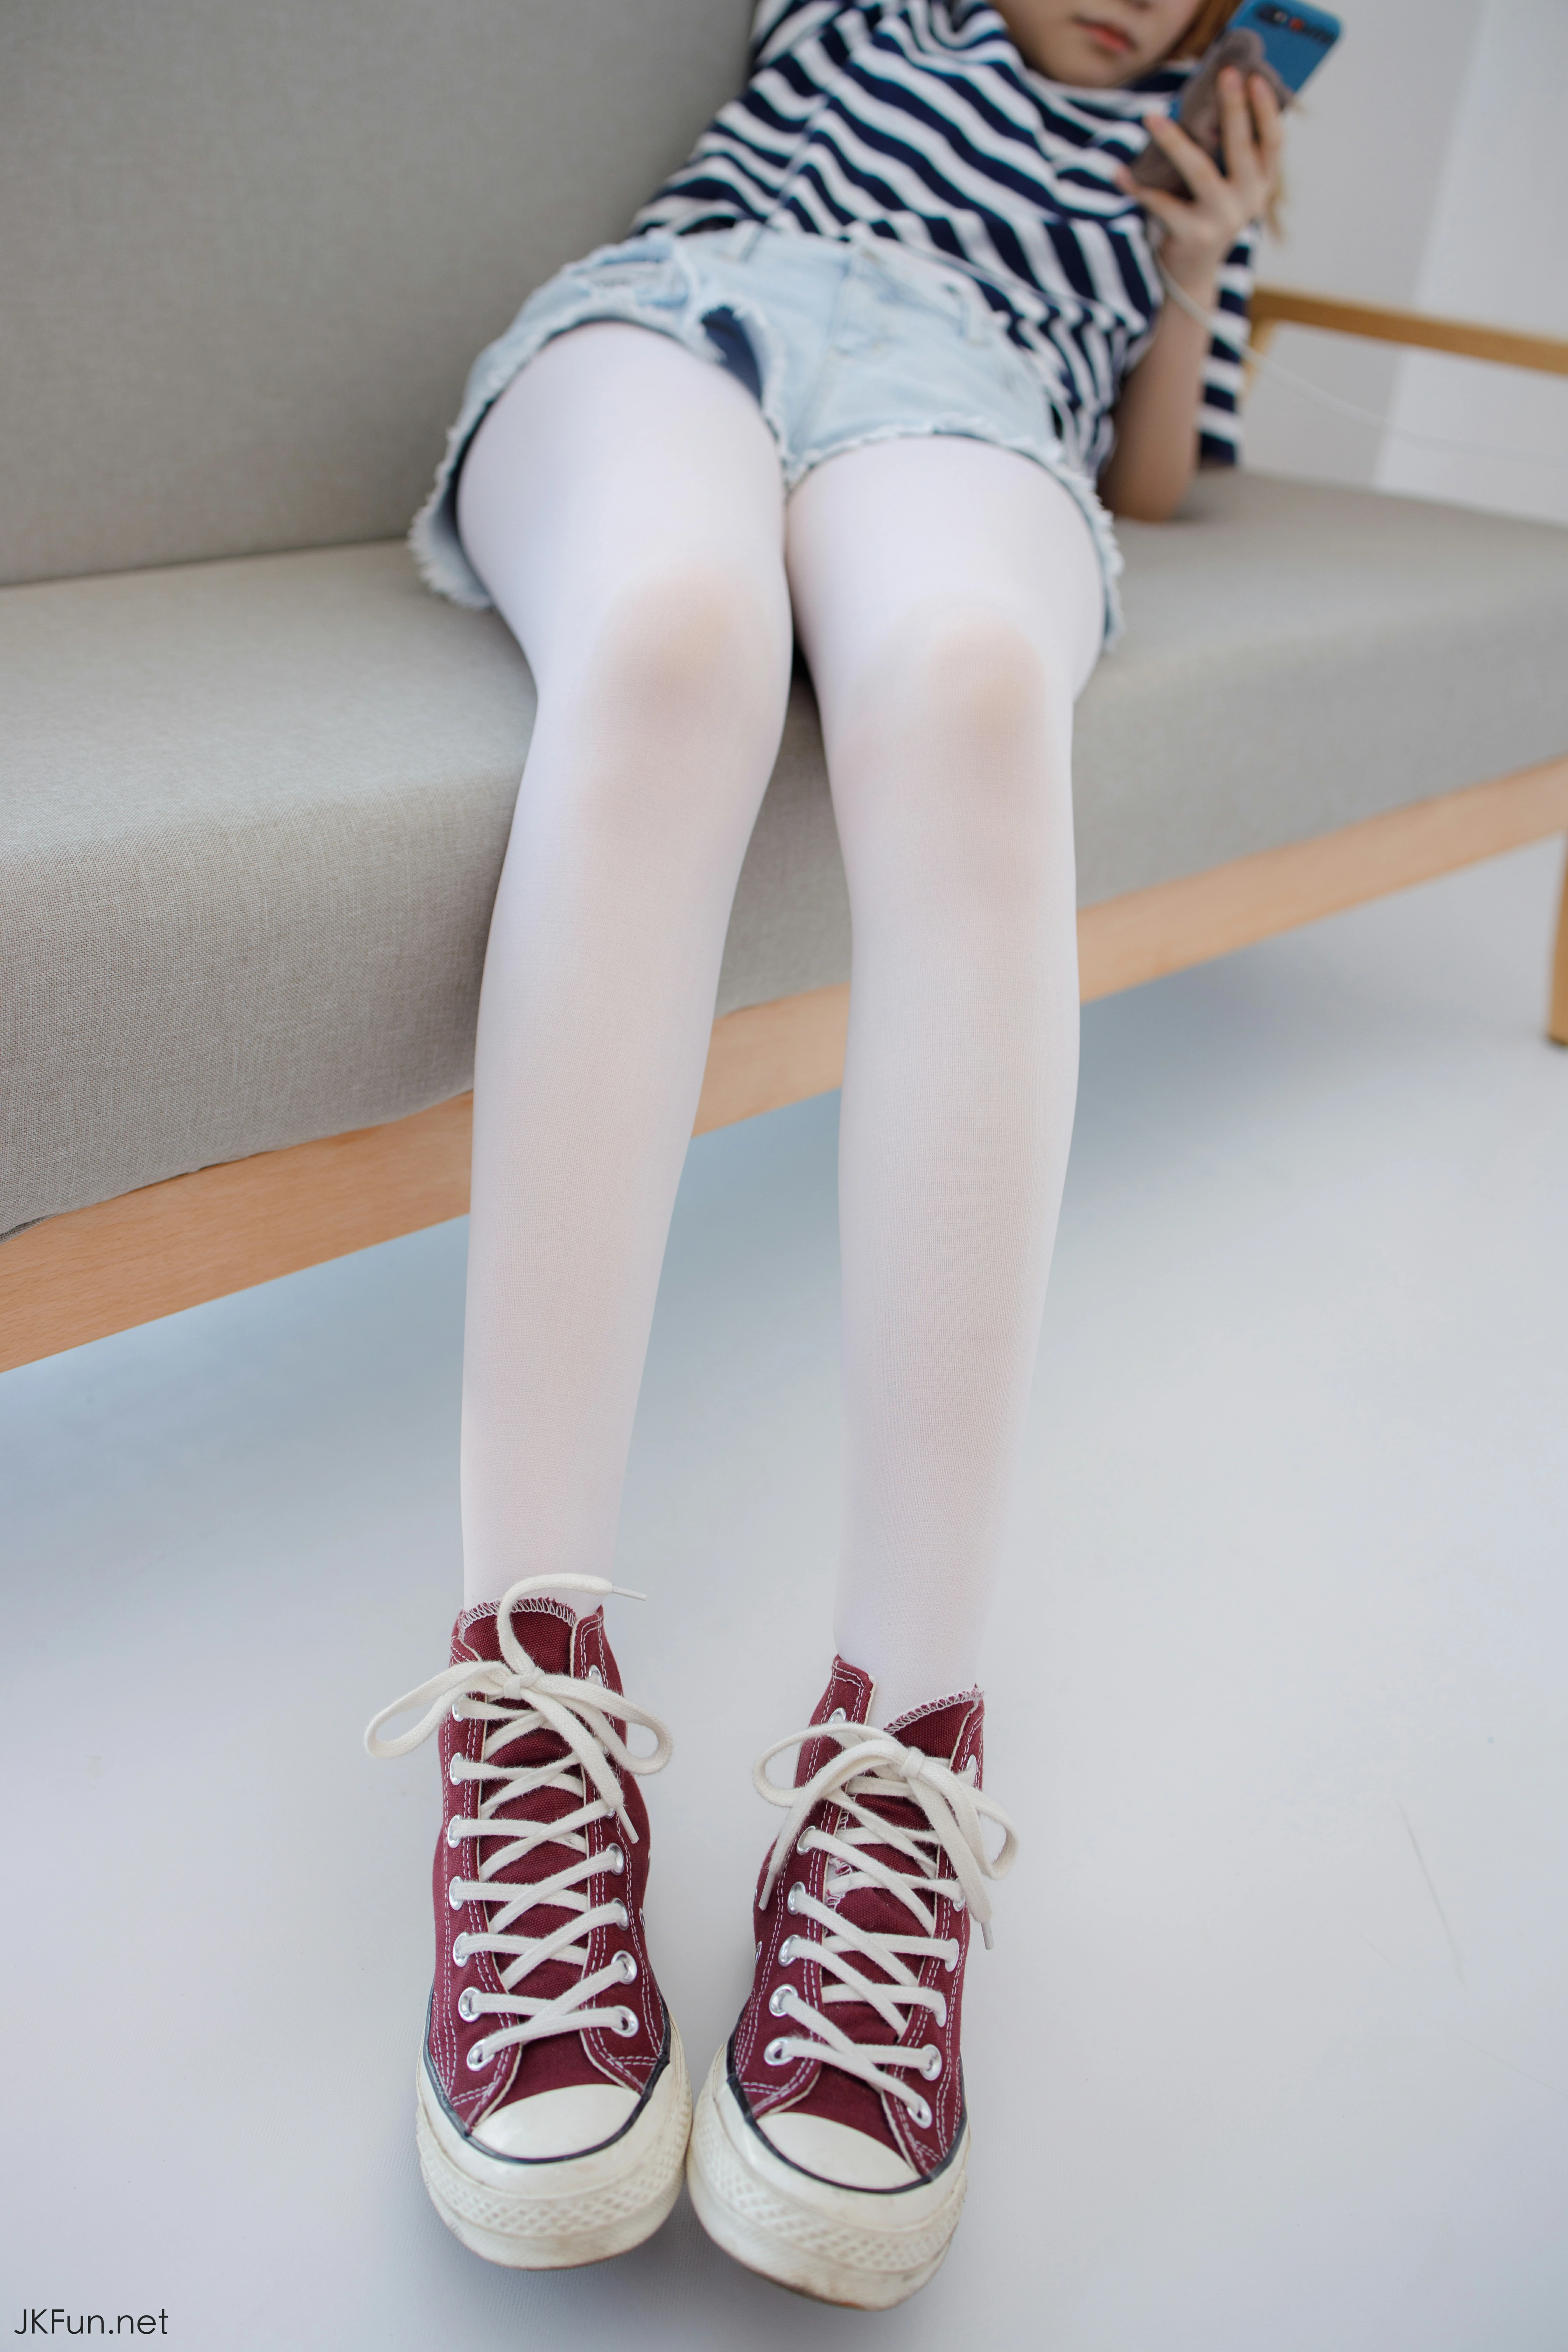 [森萝财团]JKFUN-020 80D白丝 Aika 蓝白短袖与牛仔热裤加白色丝袜美腿玉足性感私房写真集,